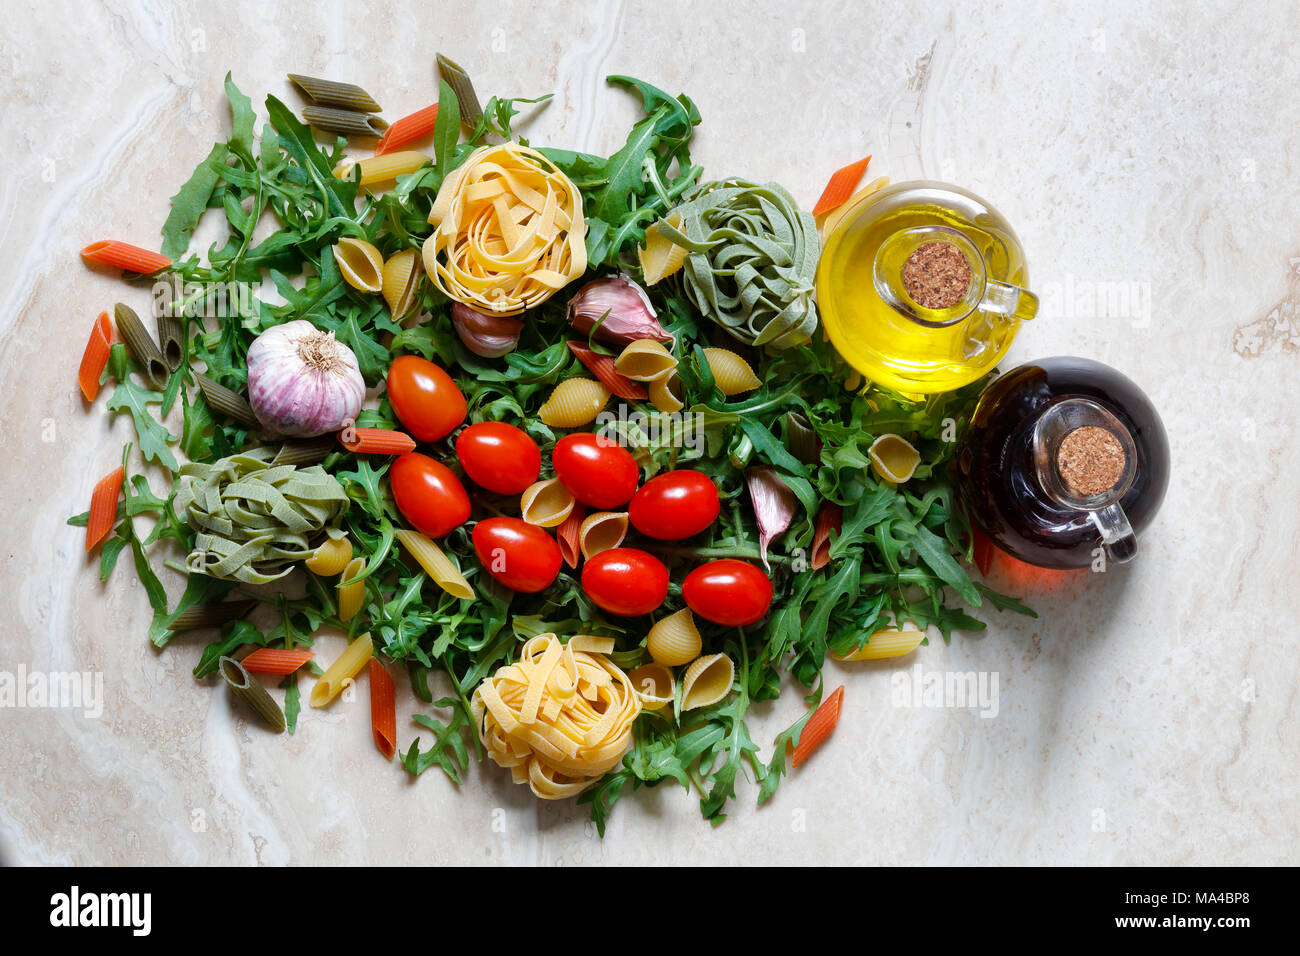 Rucola Rucola mit Pflaumen Tomaten und Knoblauch mit Tagliatelle und Penne Pasta tricolore Zutaten für italienische Küche auf Marmor tisch mit Olivenöl Stockfoto